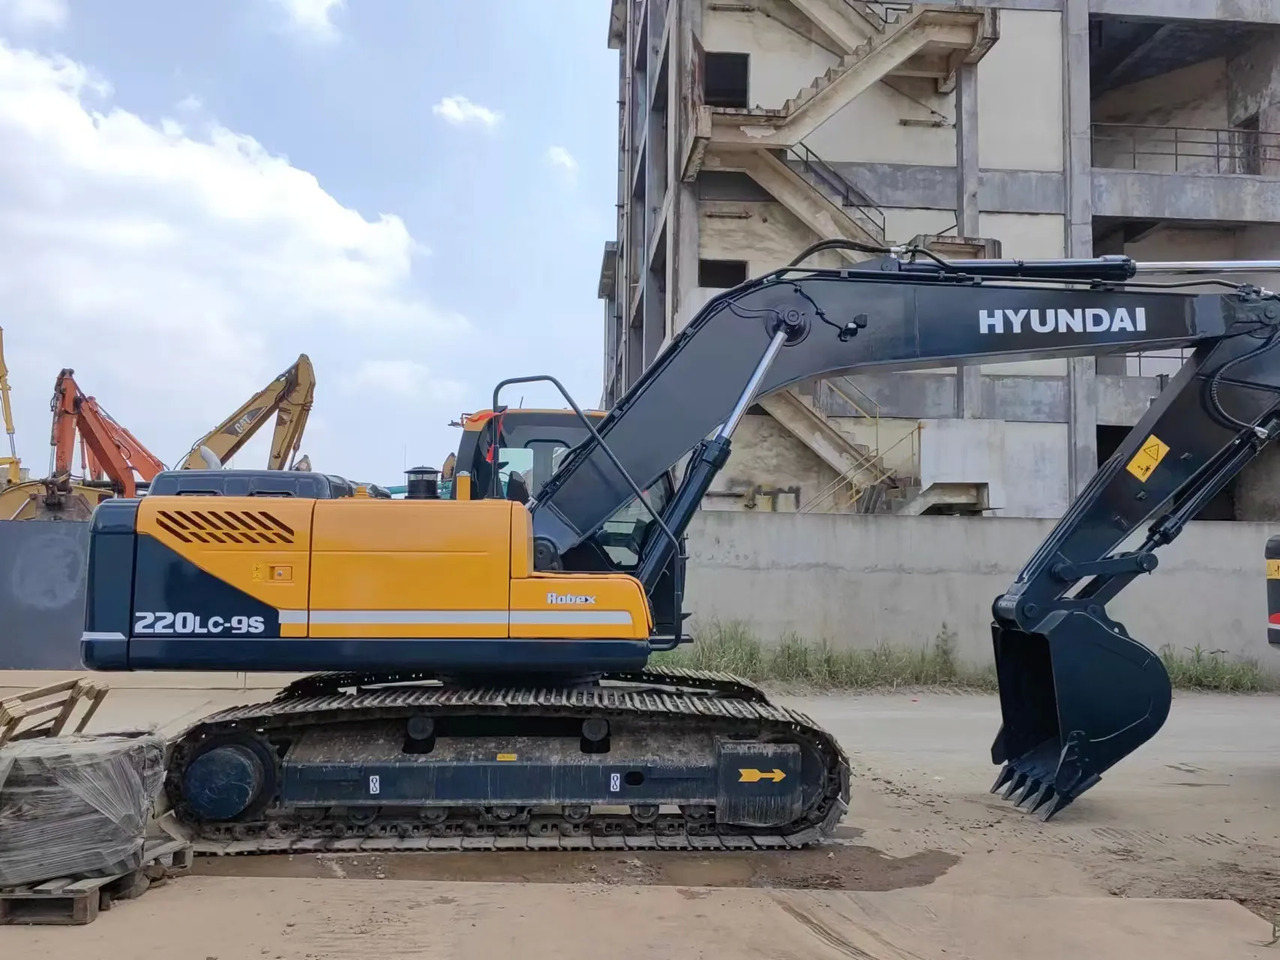 Vikšrinis ekskavatorius Good condition Hyundai used excavator crawler excavator 220LC-9S Hyundai excavator hot sale: foto 5